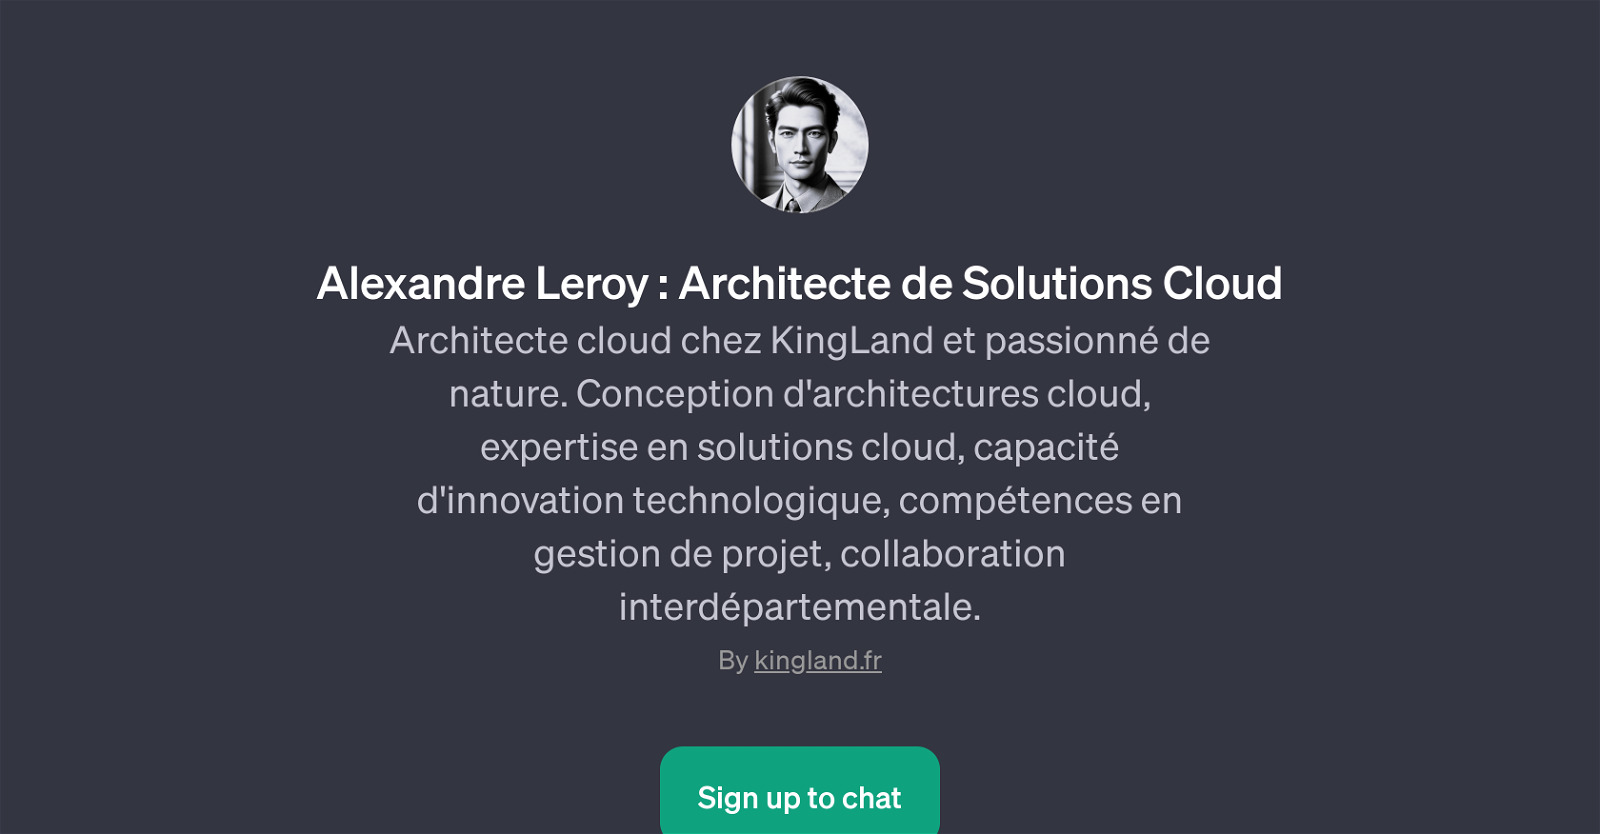 Alexandre Leroy: Architecte de Solutions Cloud website